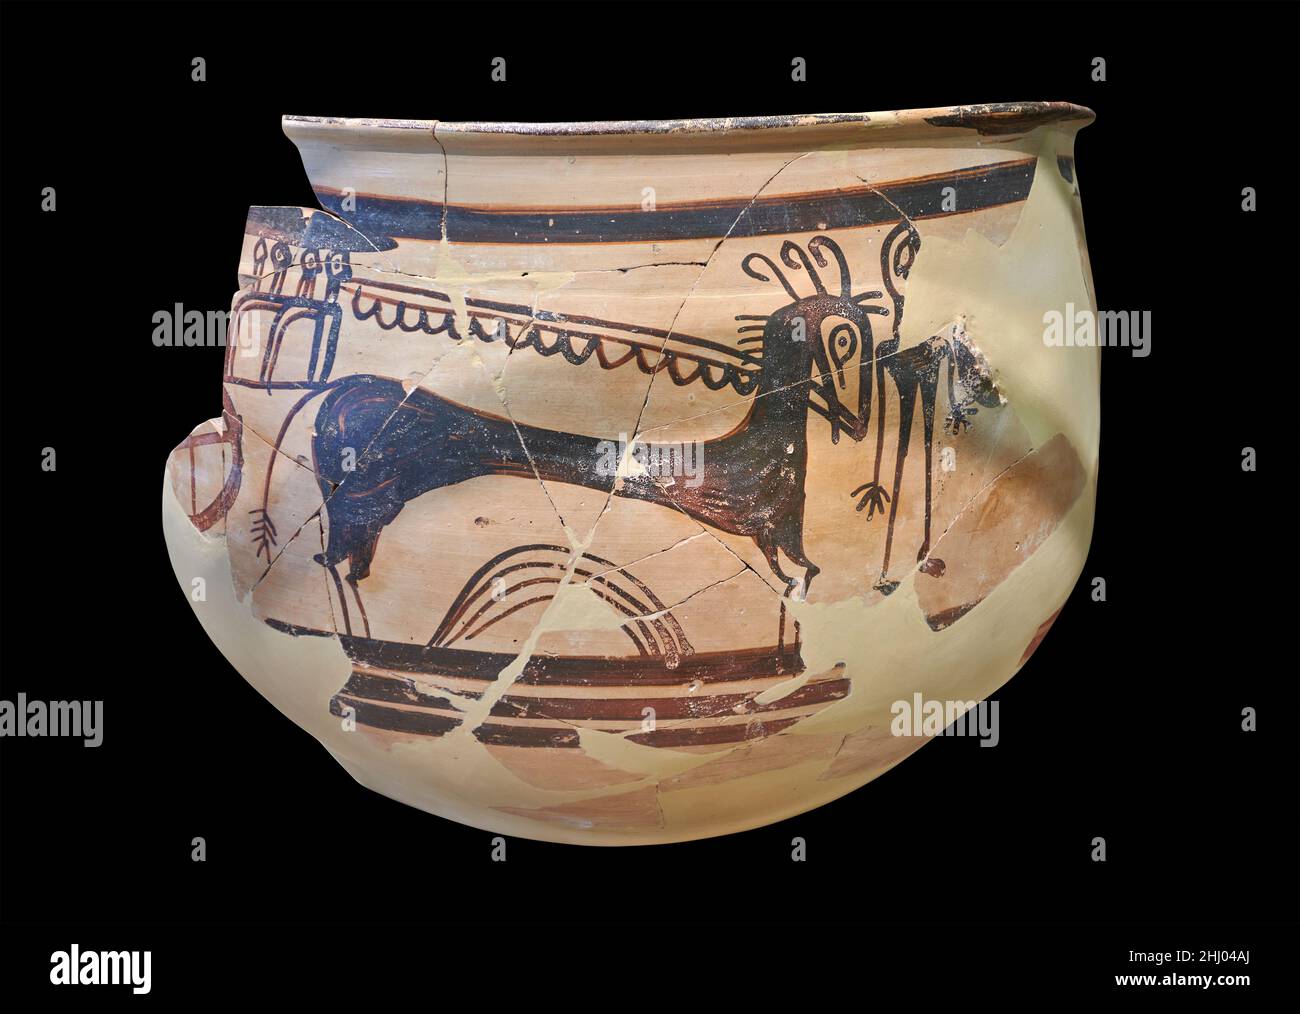 Mykenische Keramik - Kraterfragment, das eine Pferd- und Wagenszene darstellt, Tiryns, 1400-1300 v. Chr. Archäologisches Museum Nafplion. Gegen schwarzen Rückstand Stockfoto